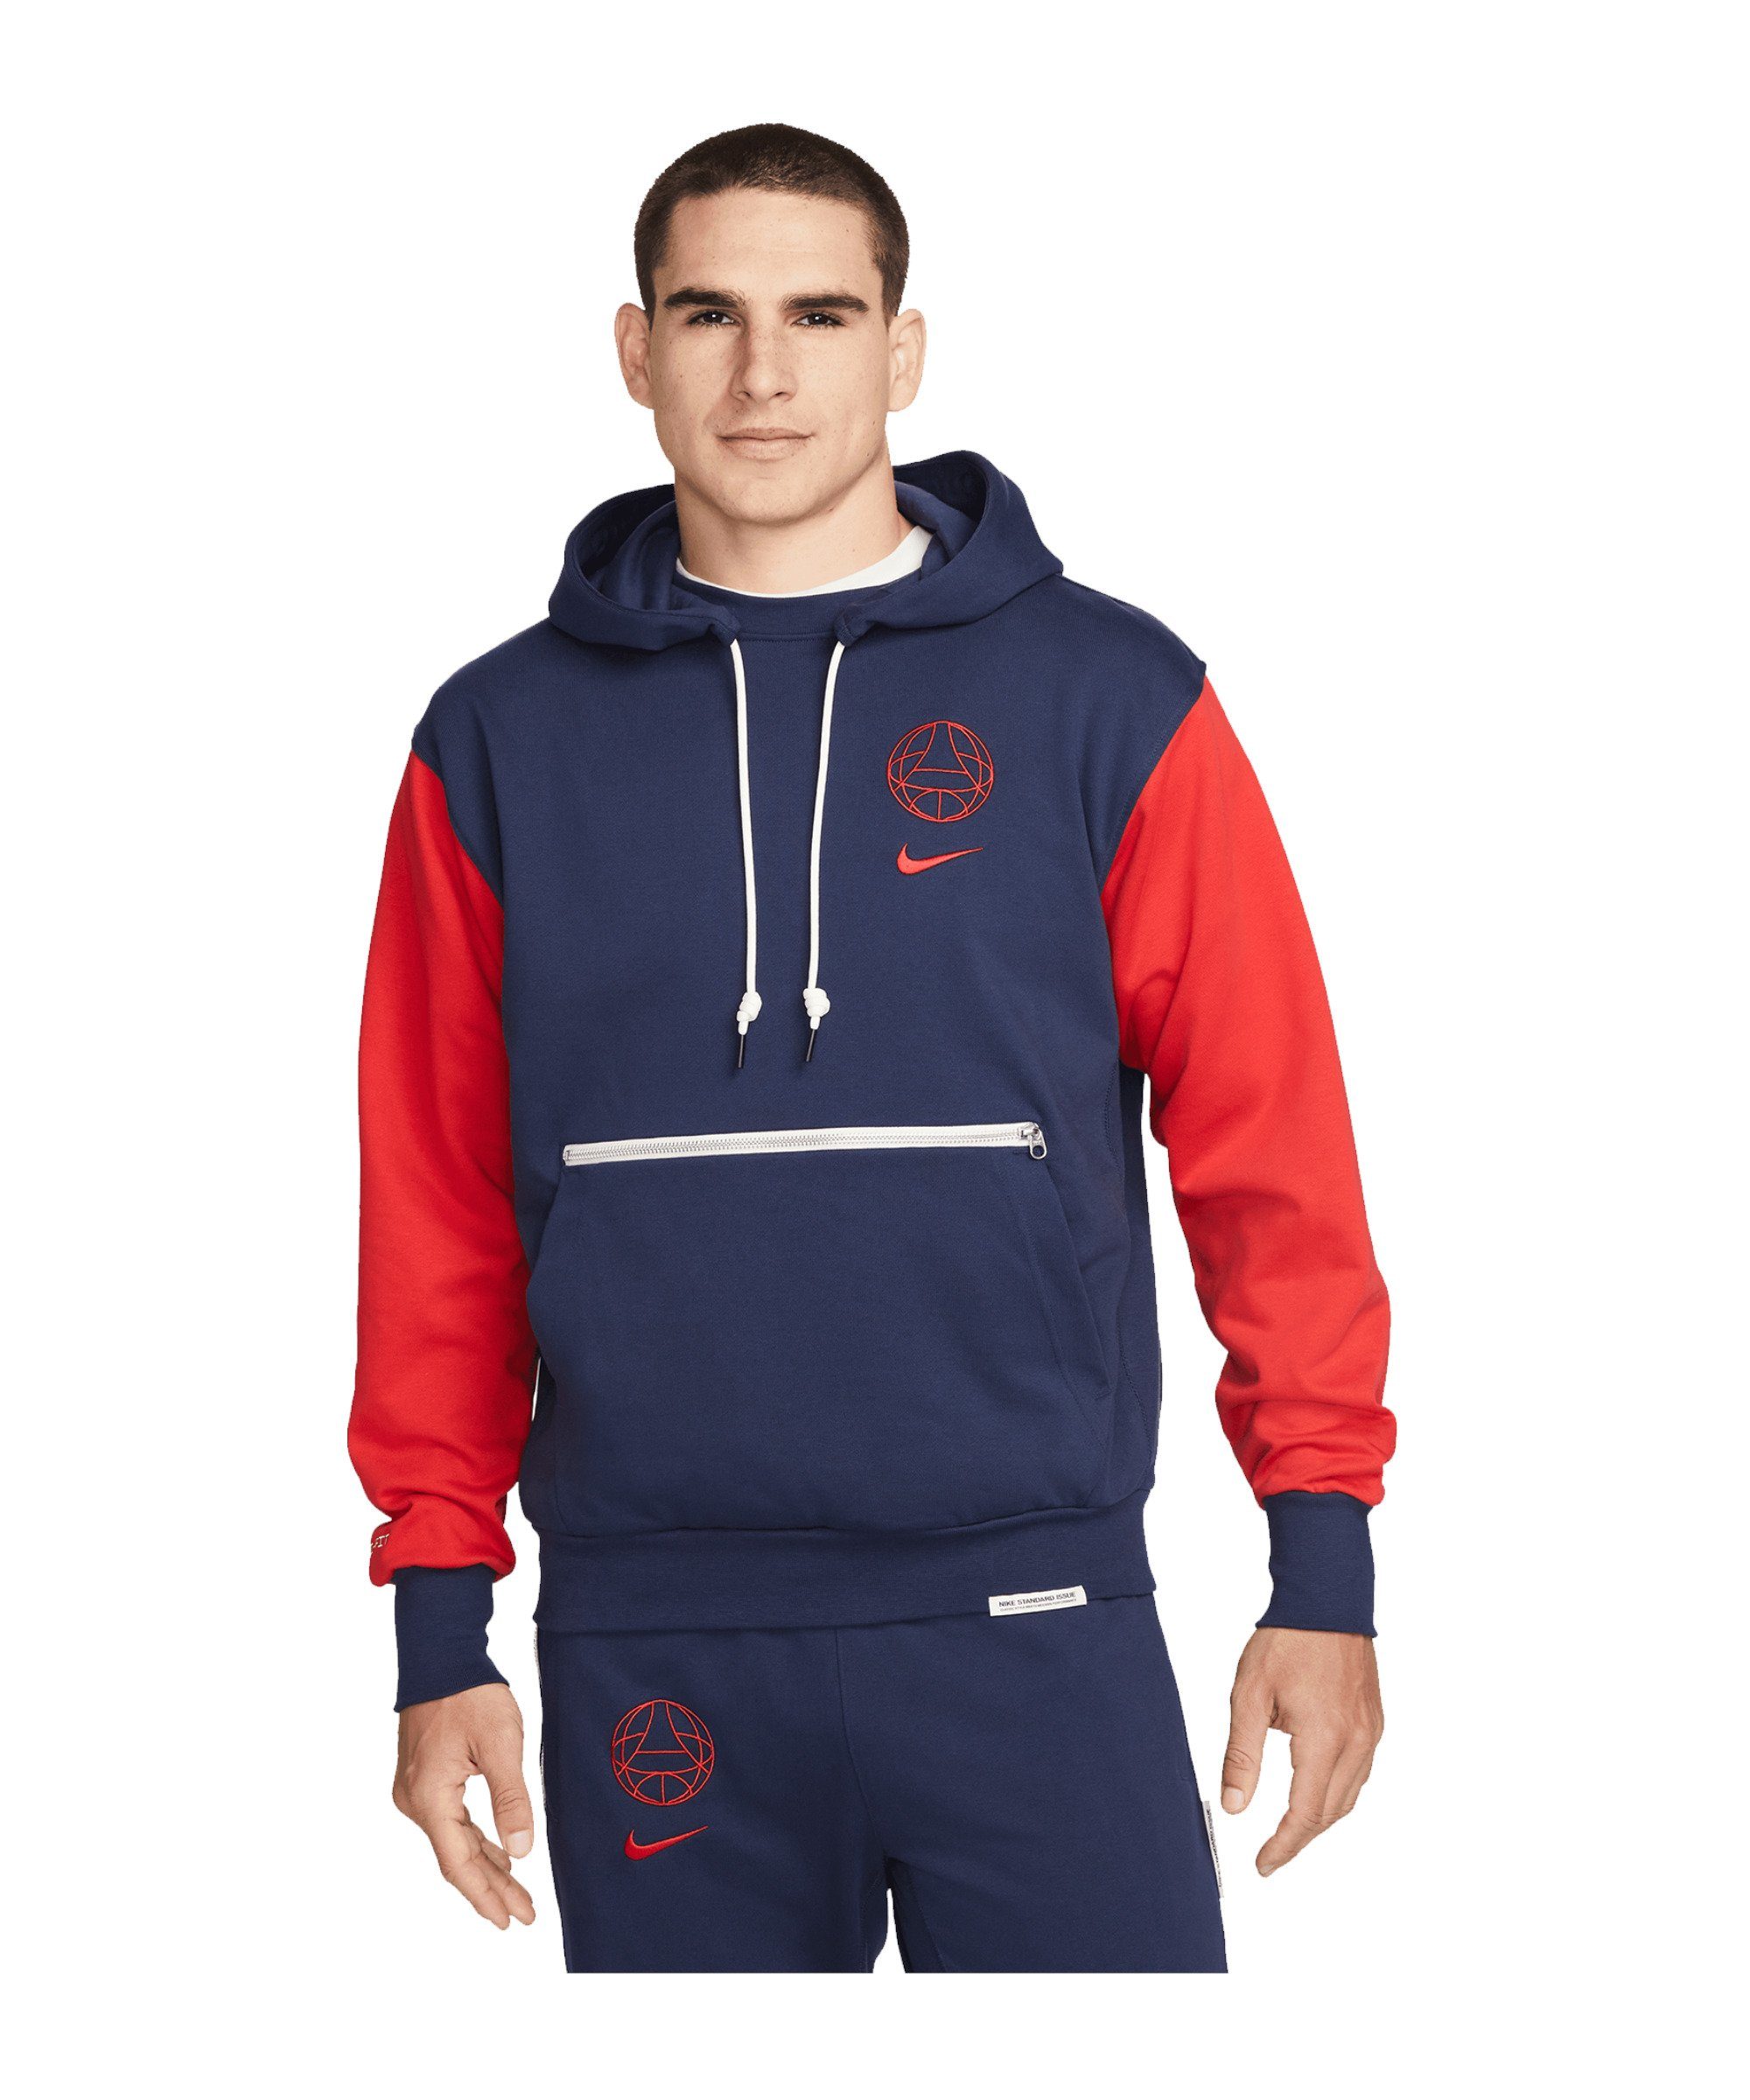 Nike Sweatshirt Paris St. Germain Standard Issue Hoody